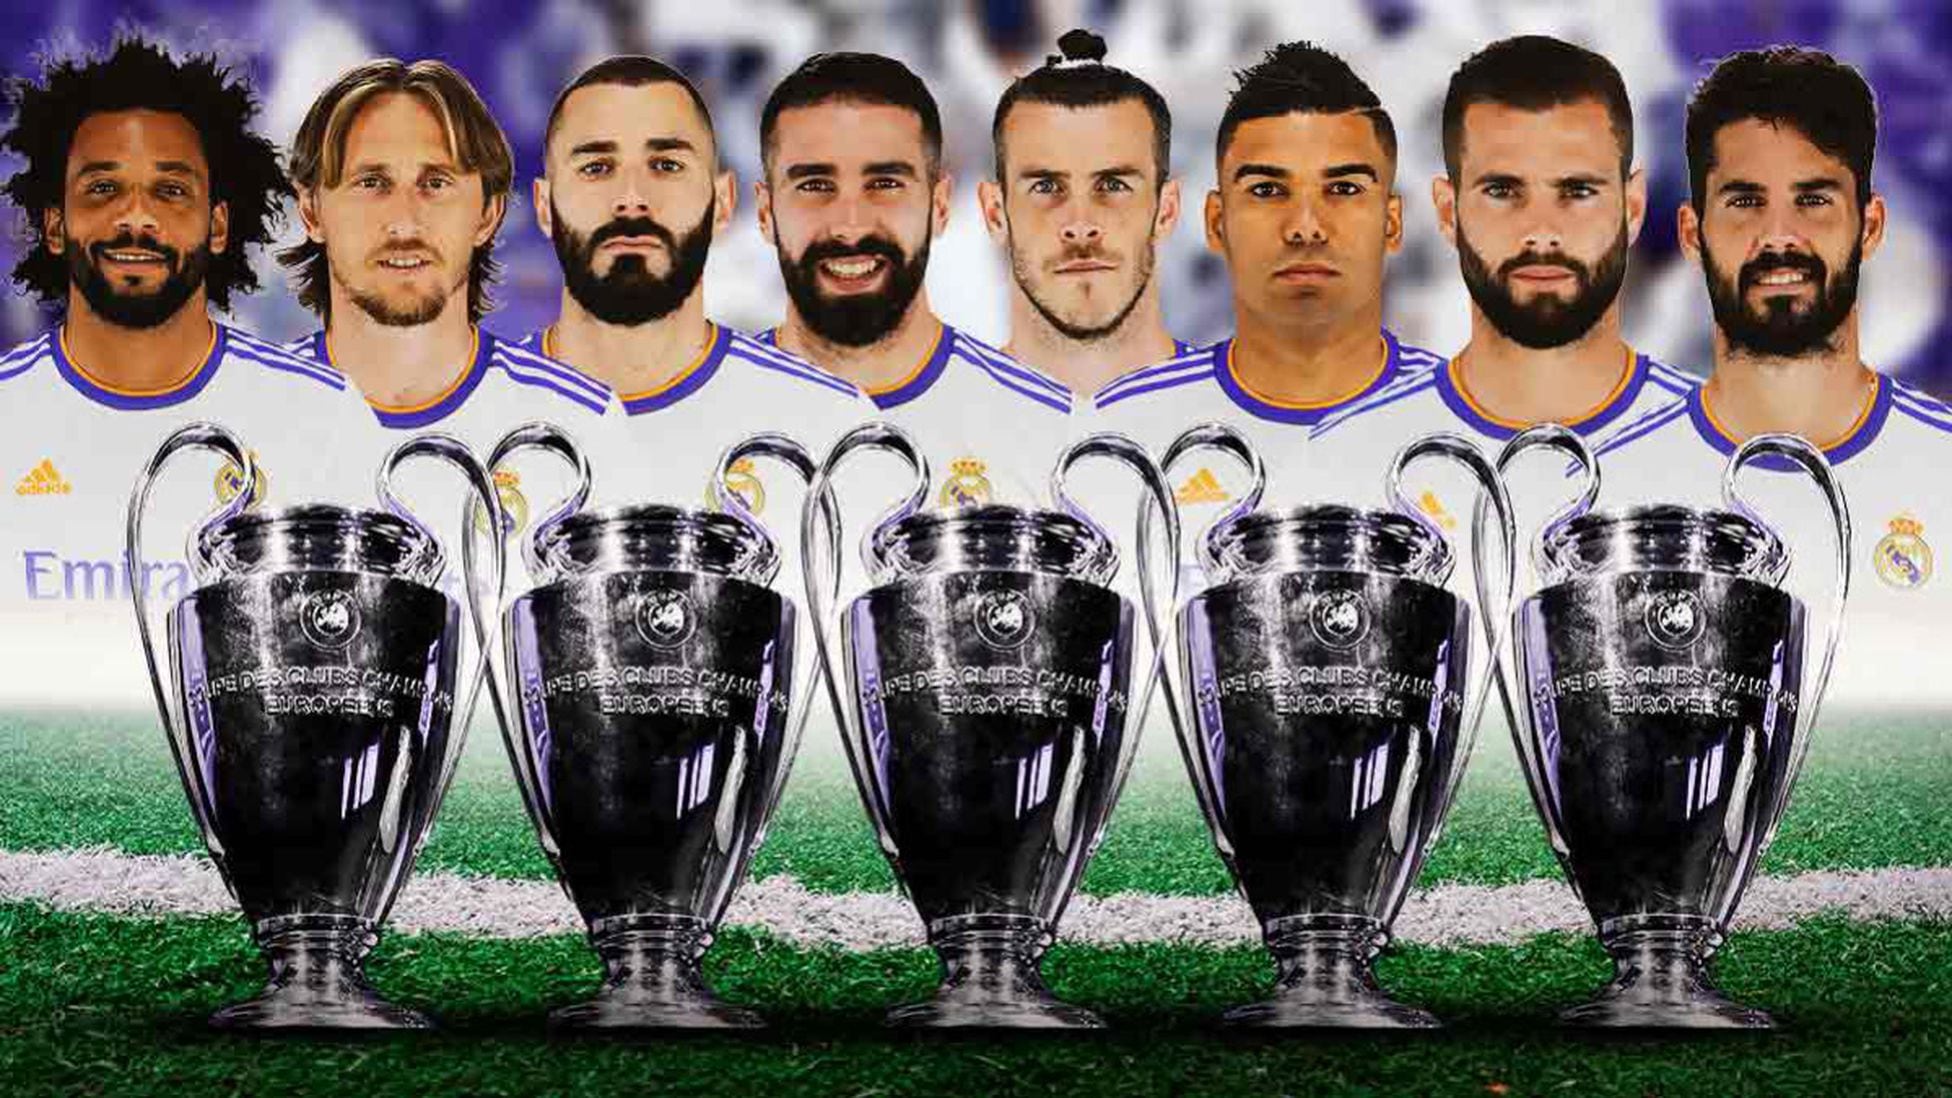 ¿Cuántos jugadores del Madrid han ganado 5 Champions